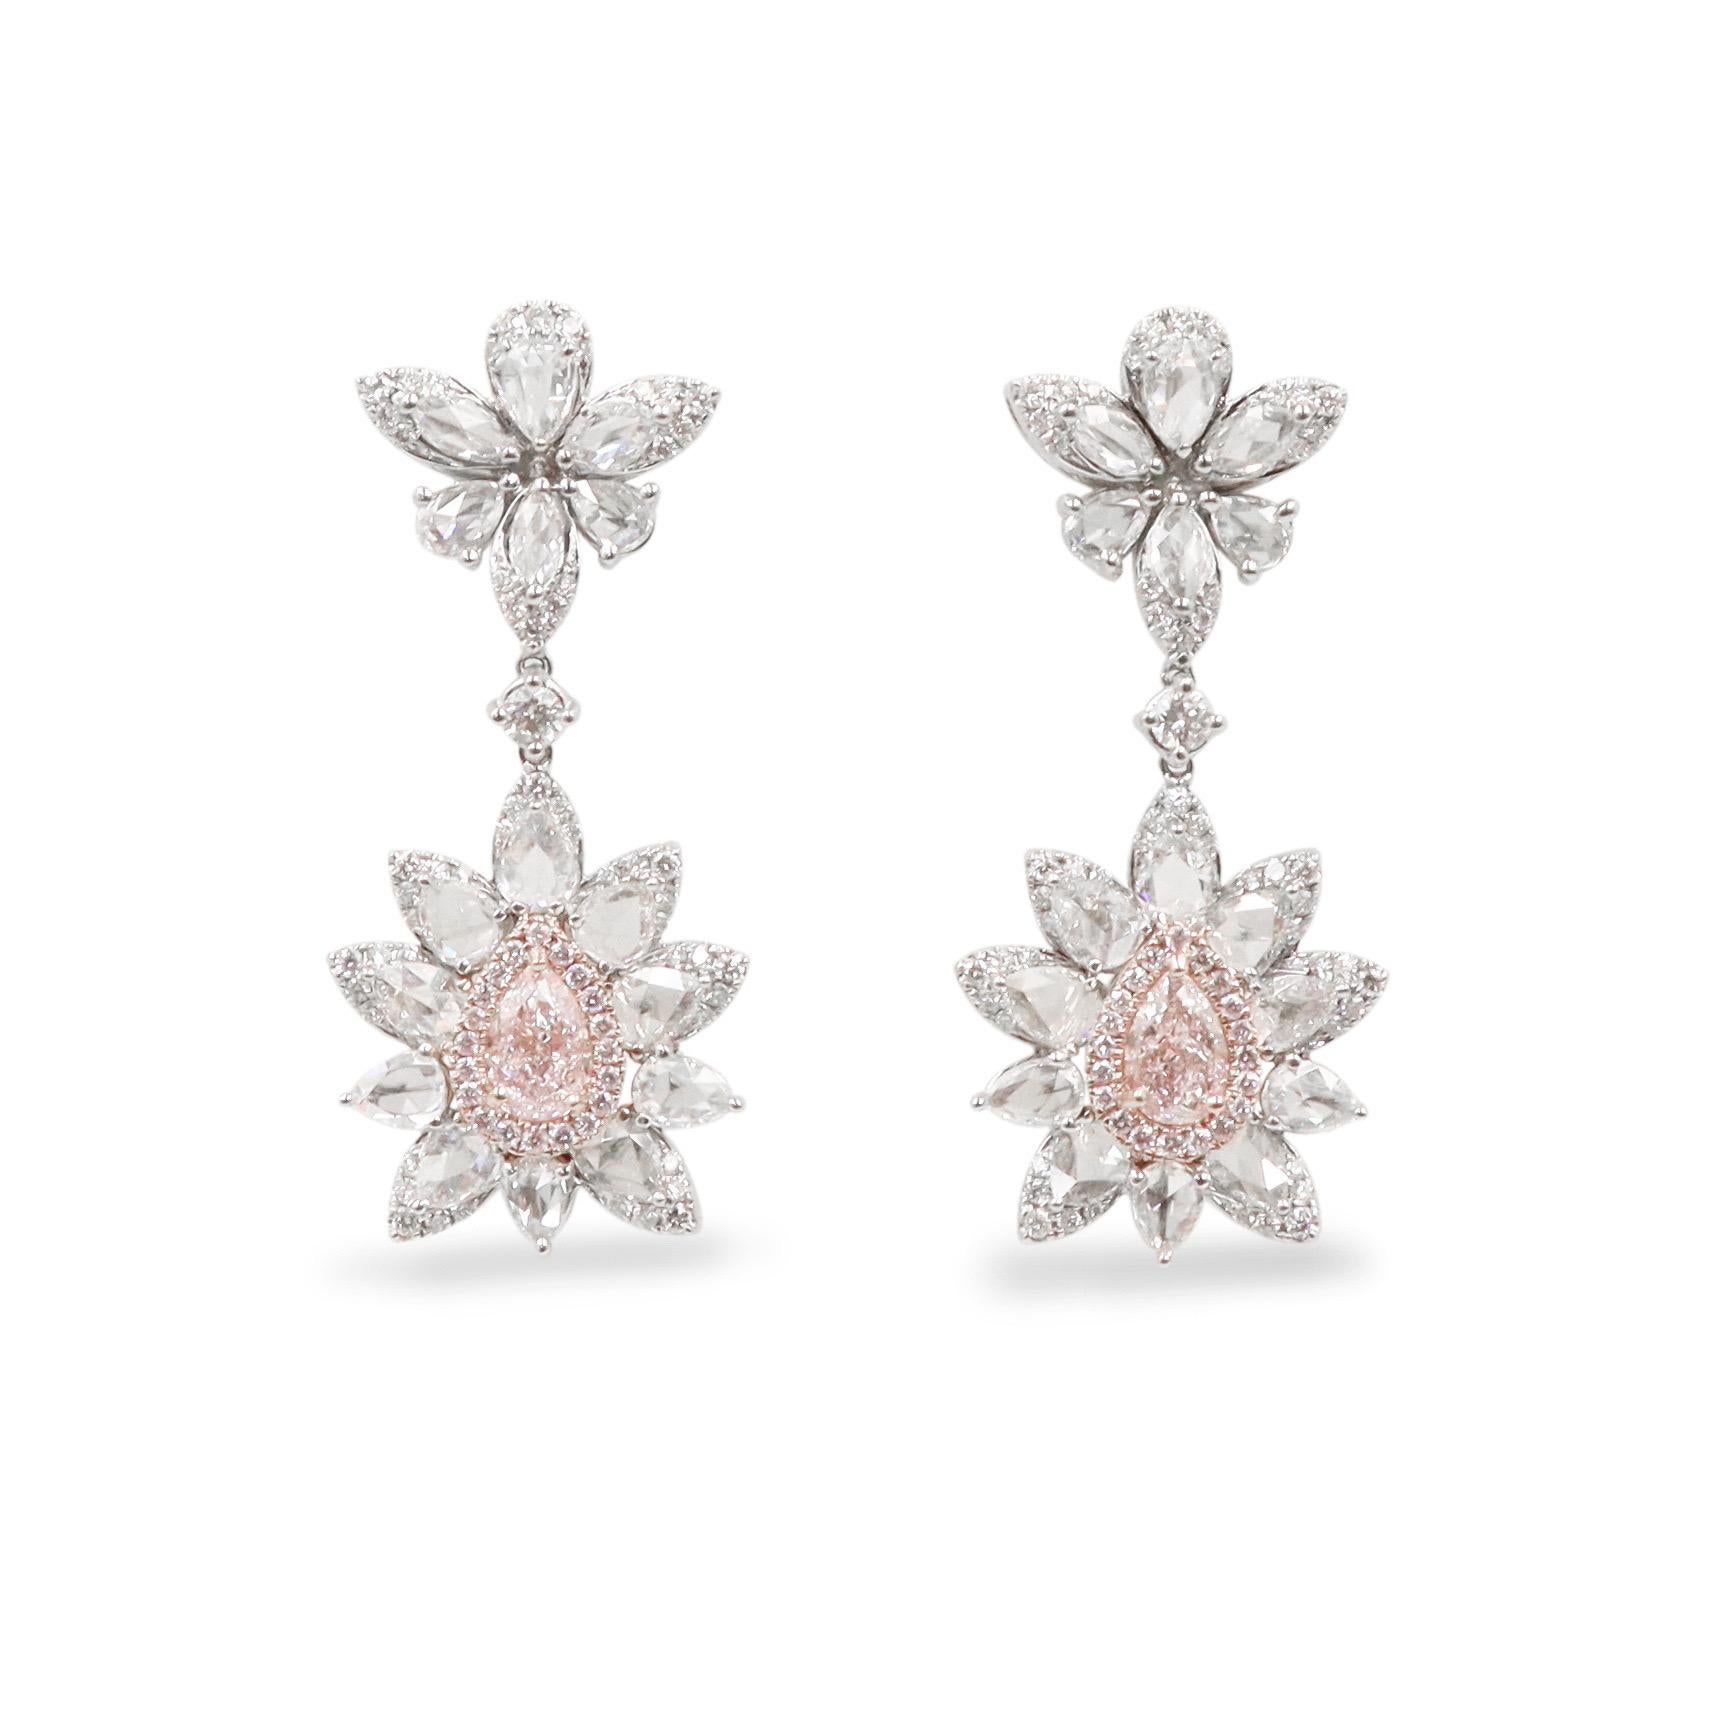 De la chambre forte d'Emilio Jewelry située sur la Cinquième Avenue de New York,
Comprenant deux diamants naturels certifiés GIA de couleur rose très clair, pour un poids total de 4,67 carats. 
Poids du diamant : 4,67 carats
Veuillez vous renseigner